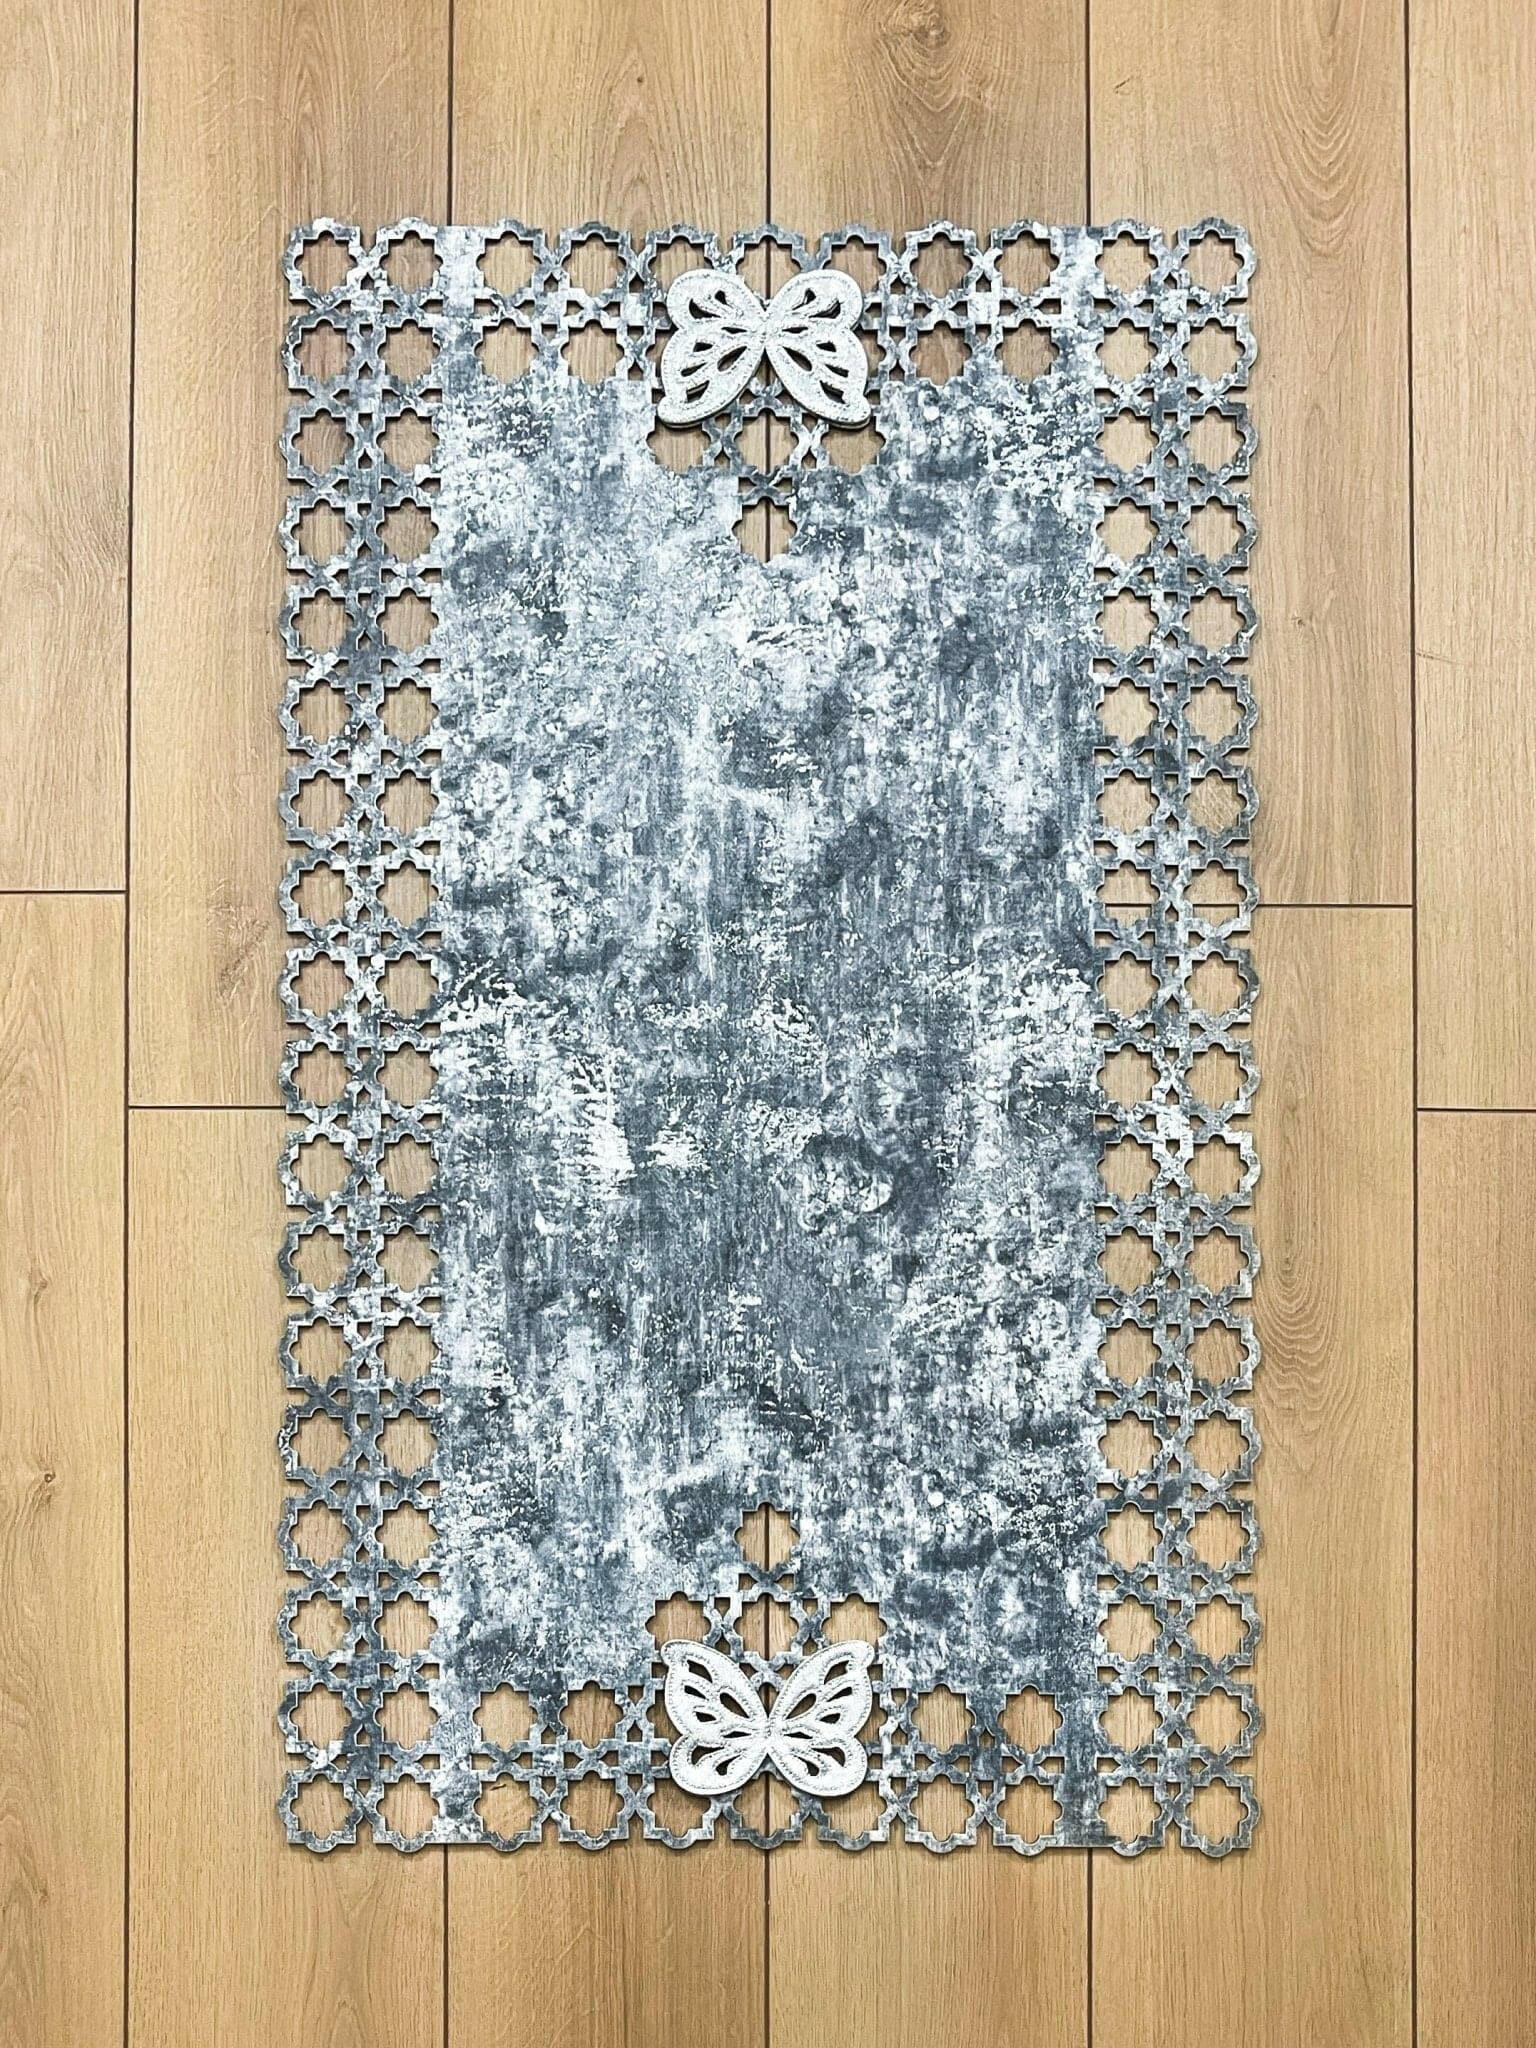 Kelebek Grey Rug - Creative Home Designs, Butterfly Turkish Carpet, Non Slip Washable Velvet Mat